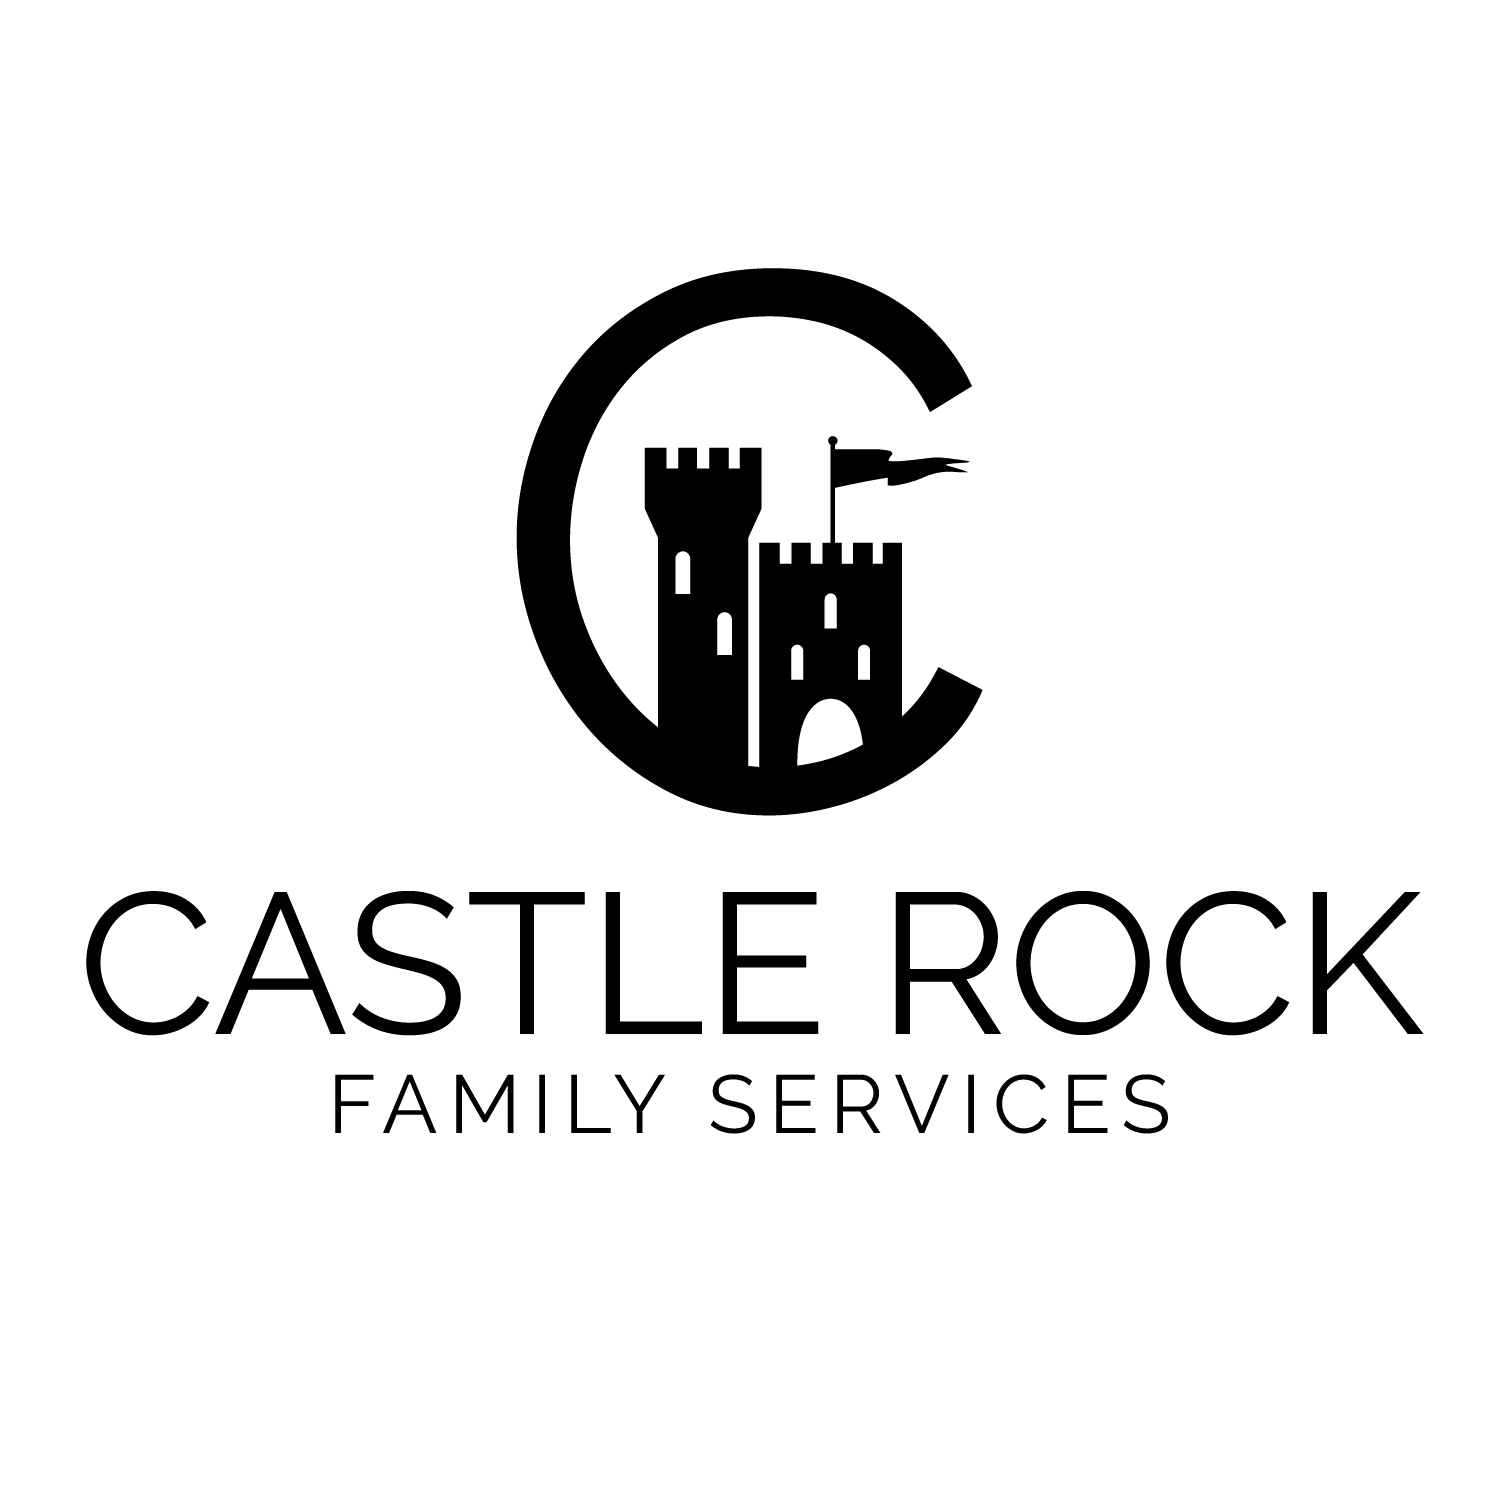 Castle Rock Family Services